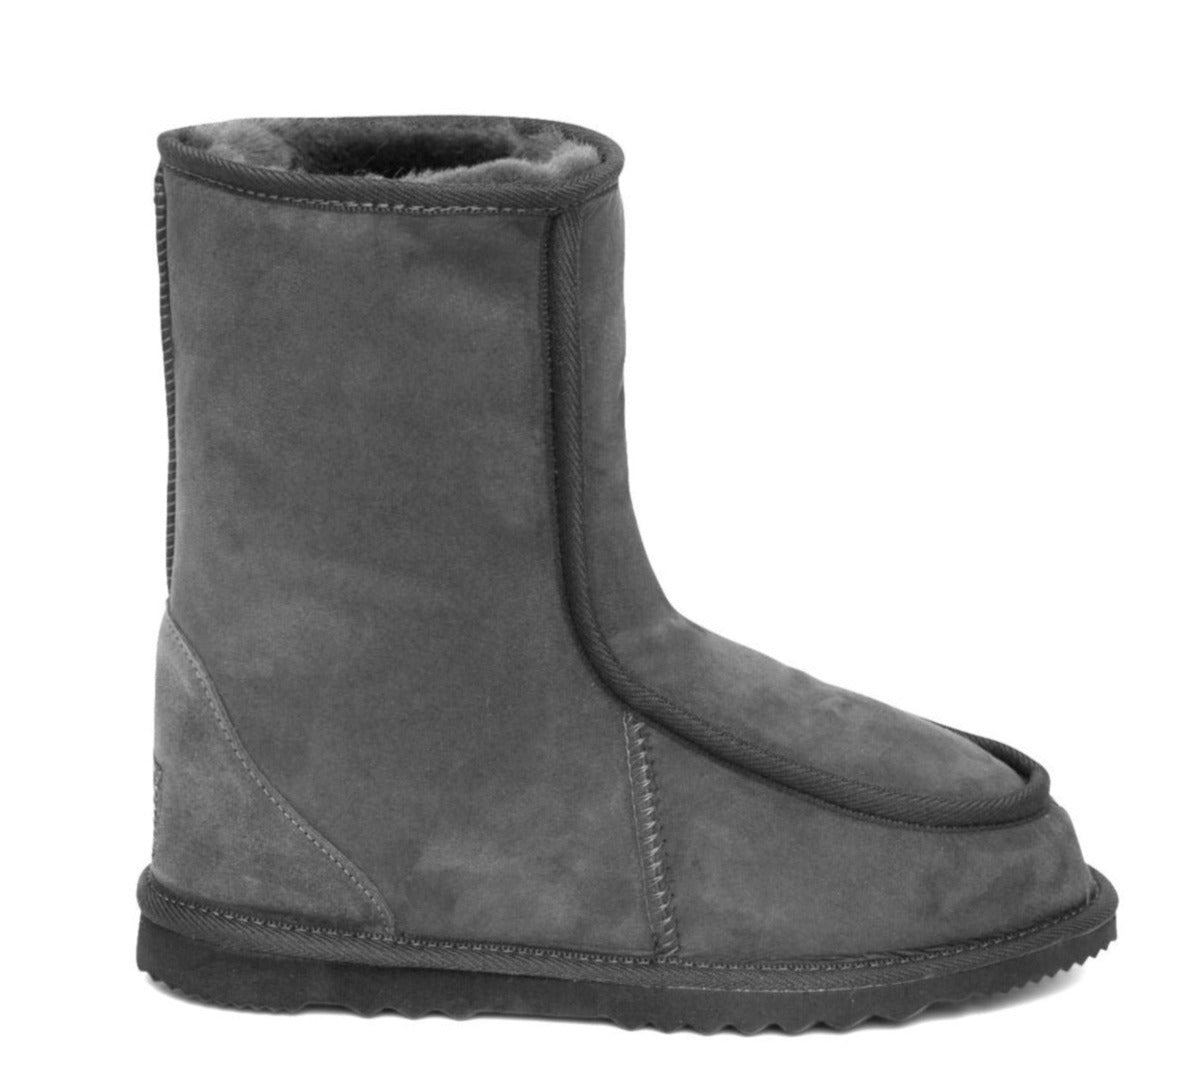 Men's Alpine Boot - mid calf length in grey